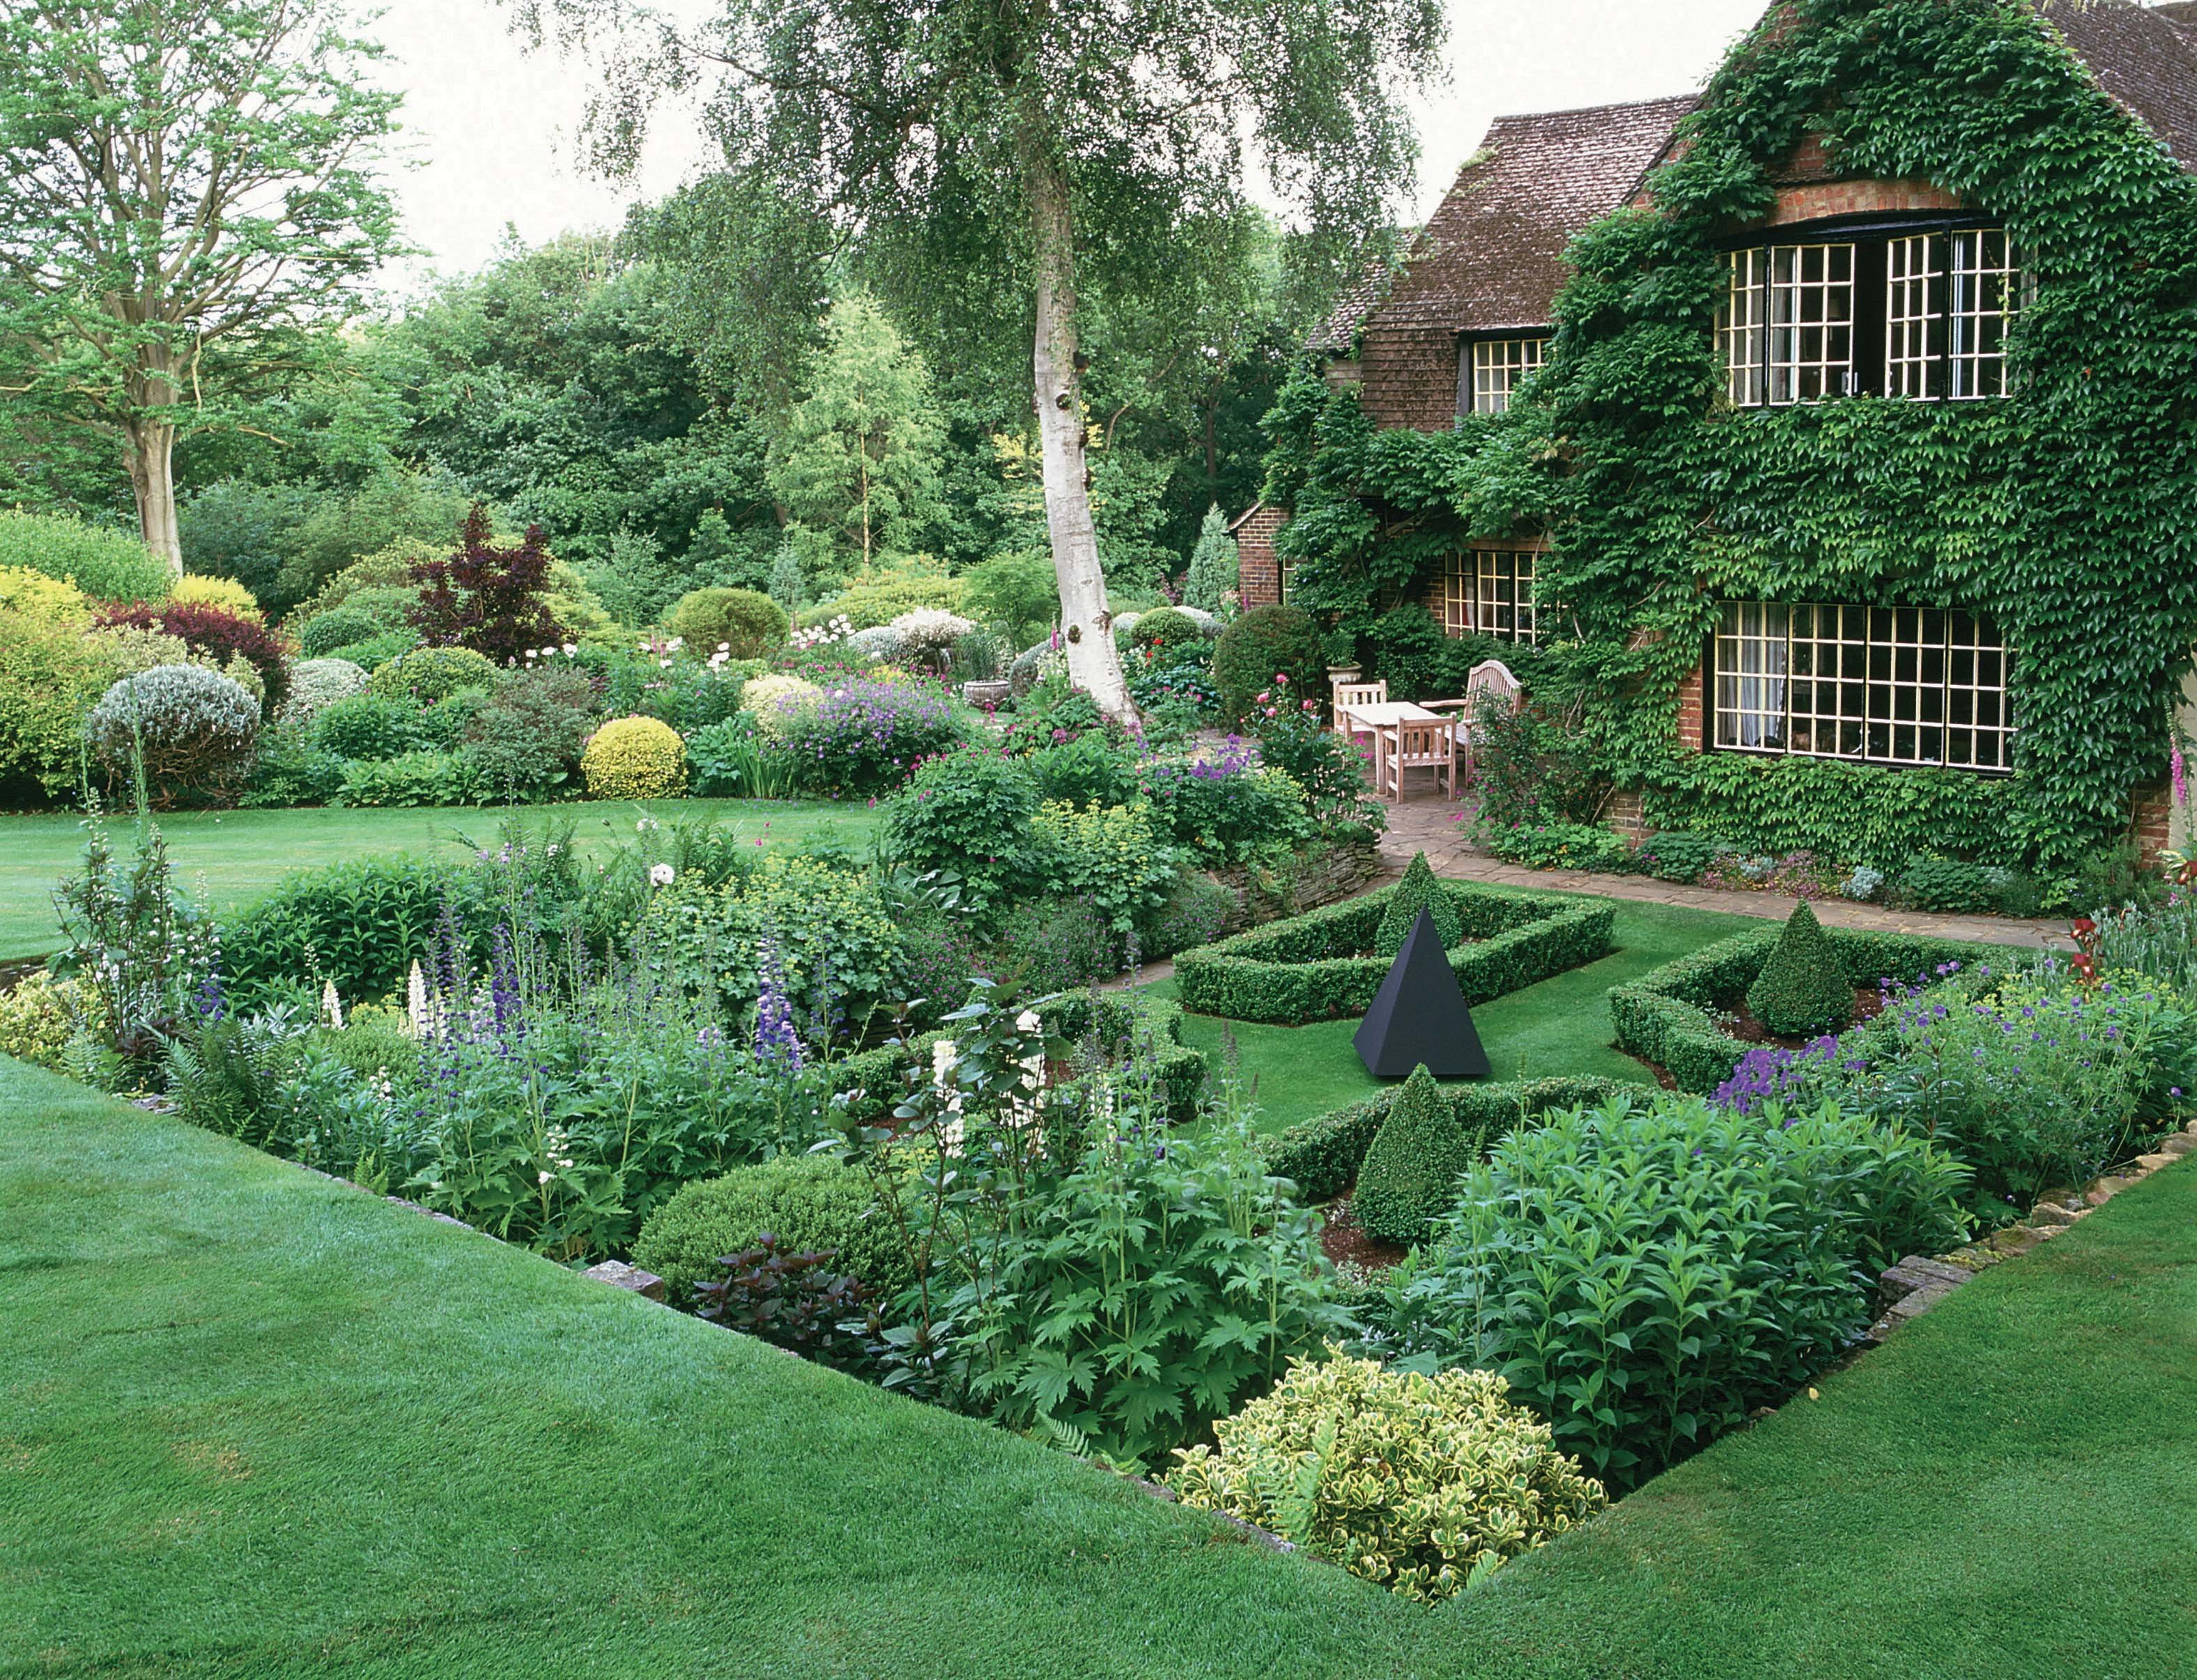 Красивый загородный участок. Хелен парк+ ландшафт. Ландшафтный дизайнер Хью Гарден. Англия деревня кэмбэлфорд ланшадф садов.